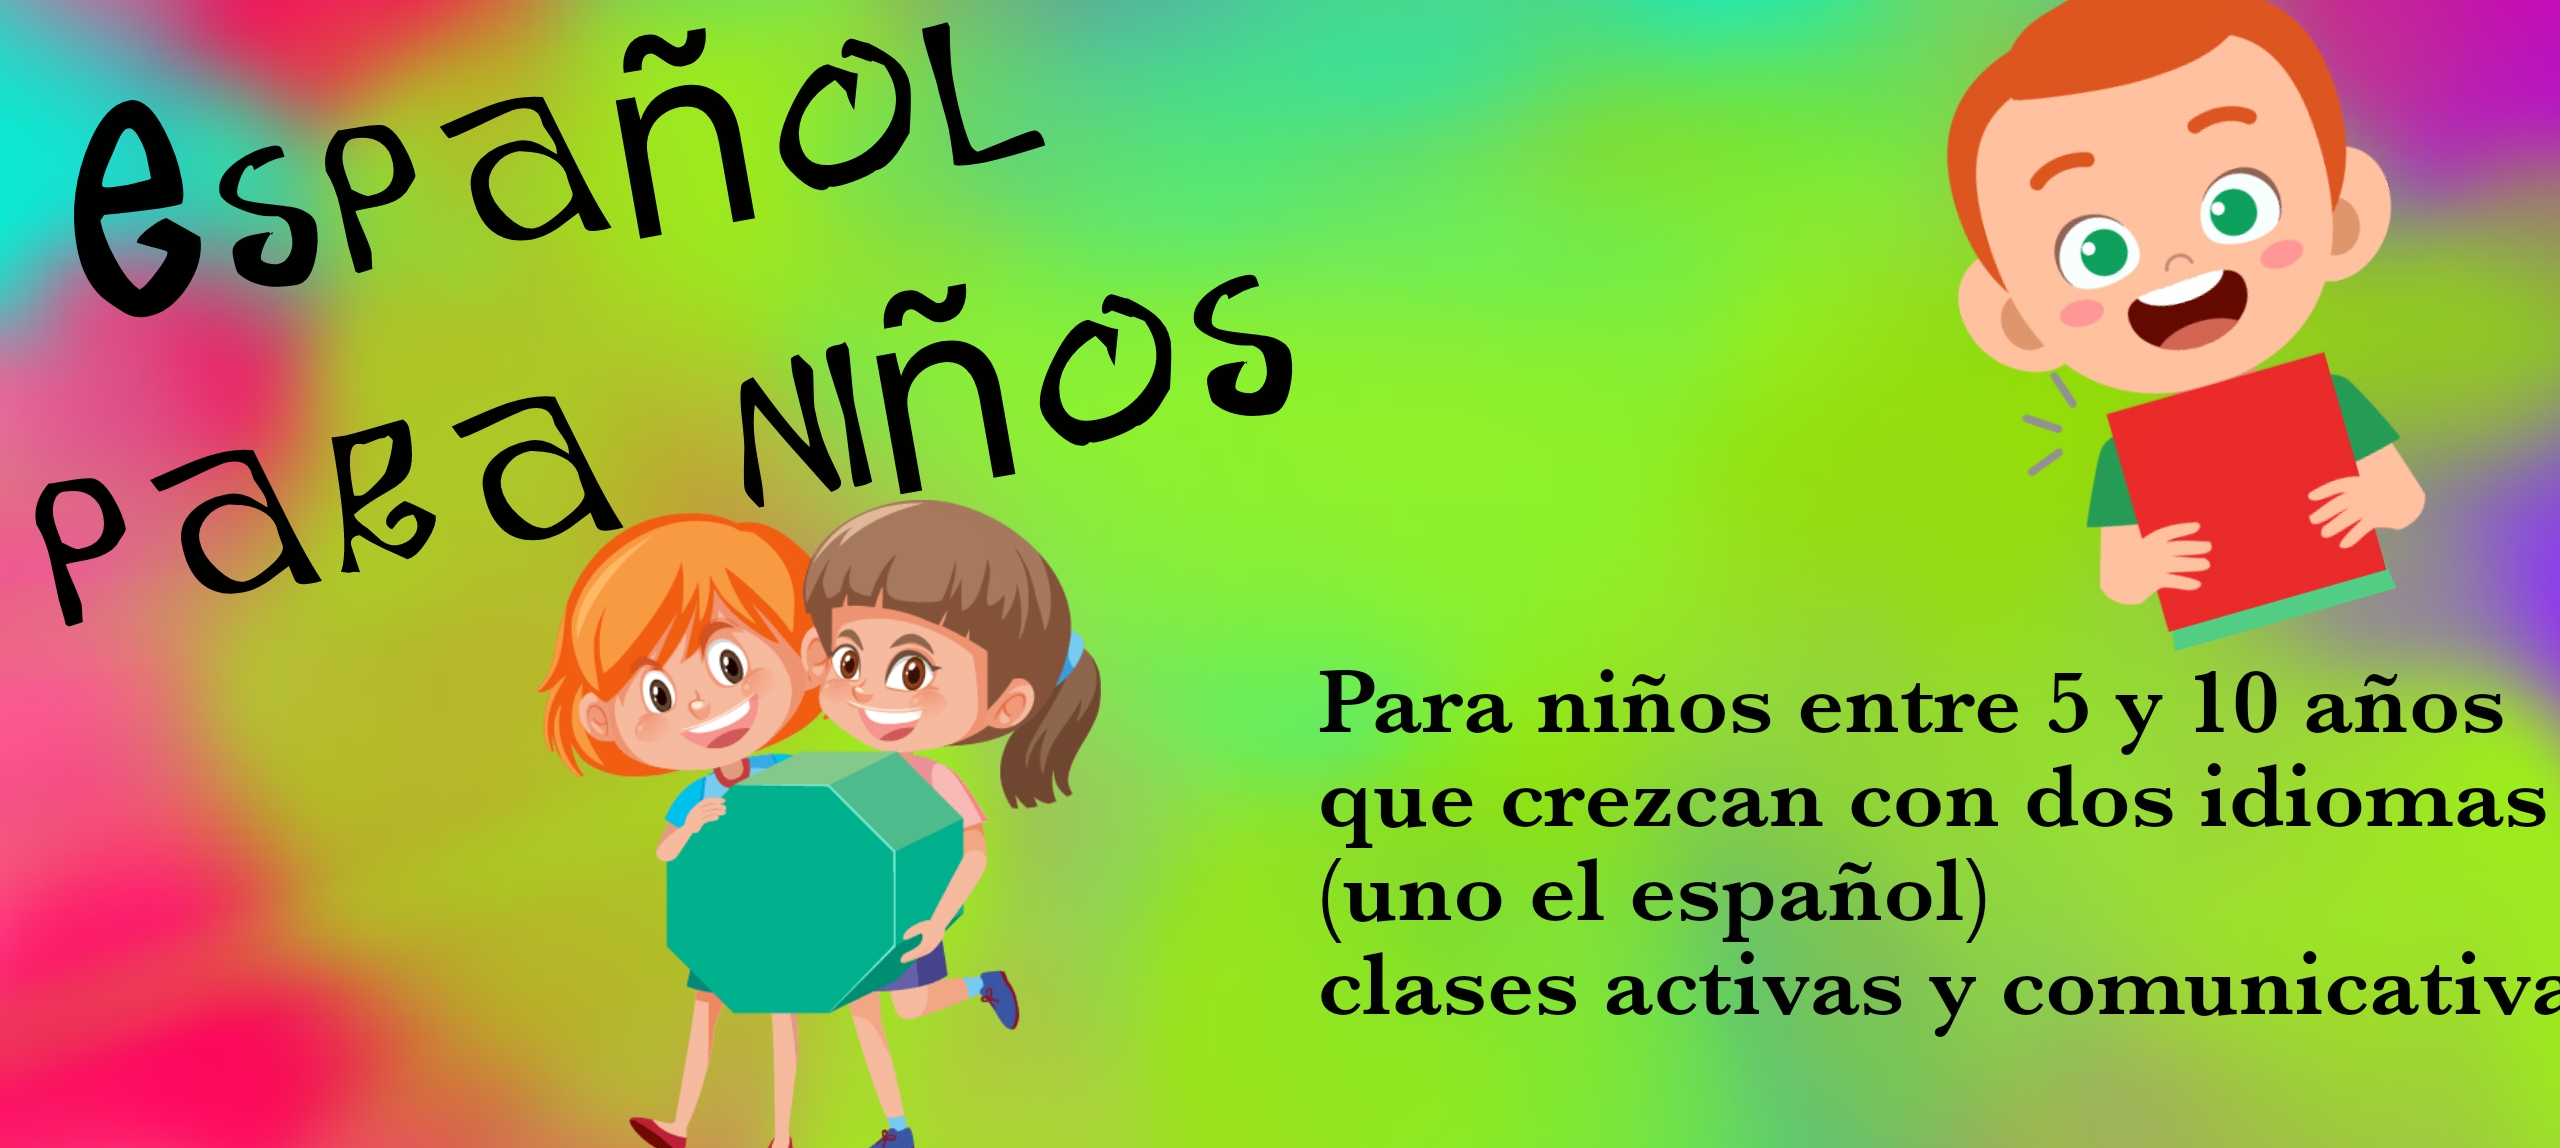 Español para niños